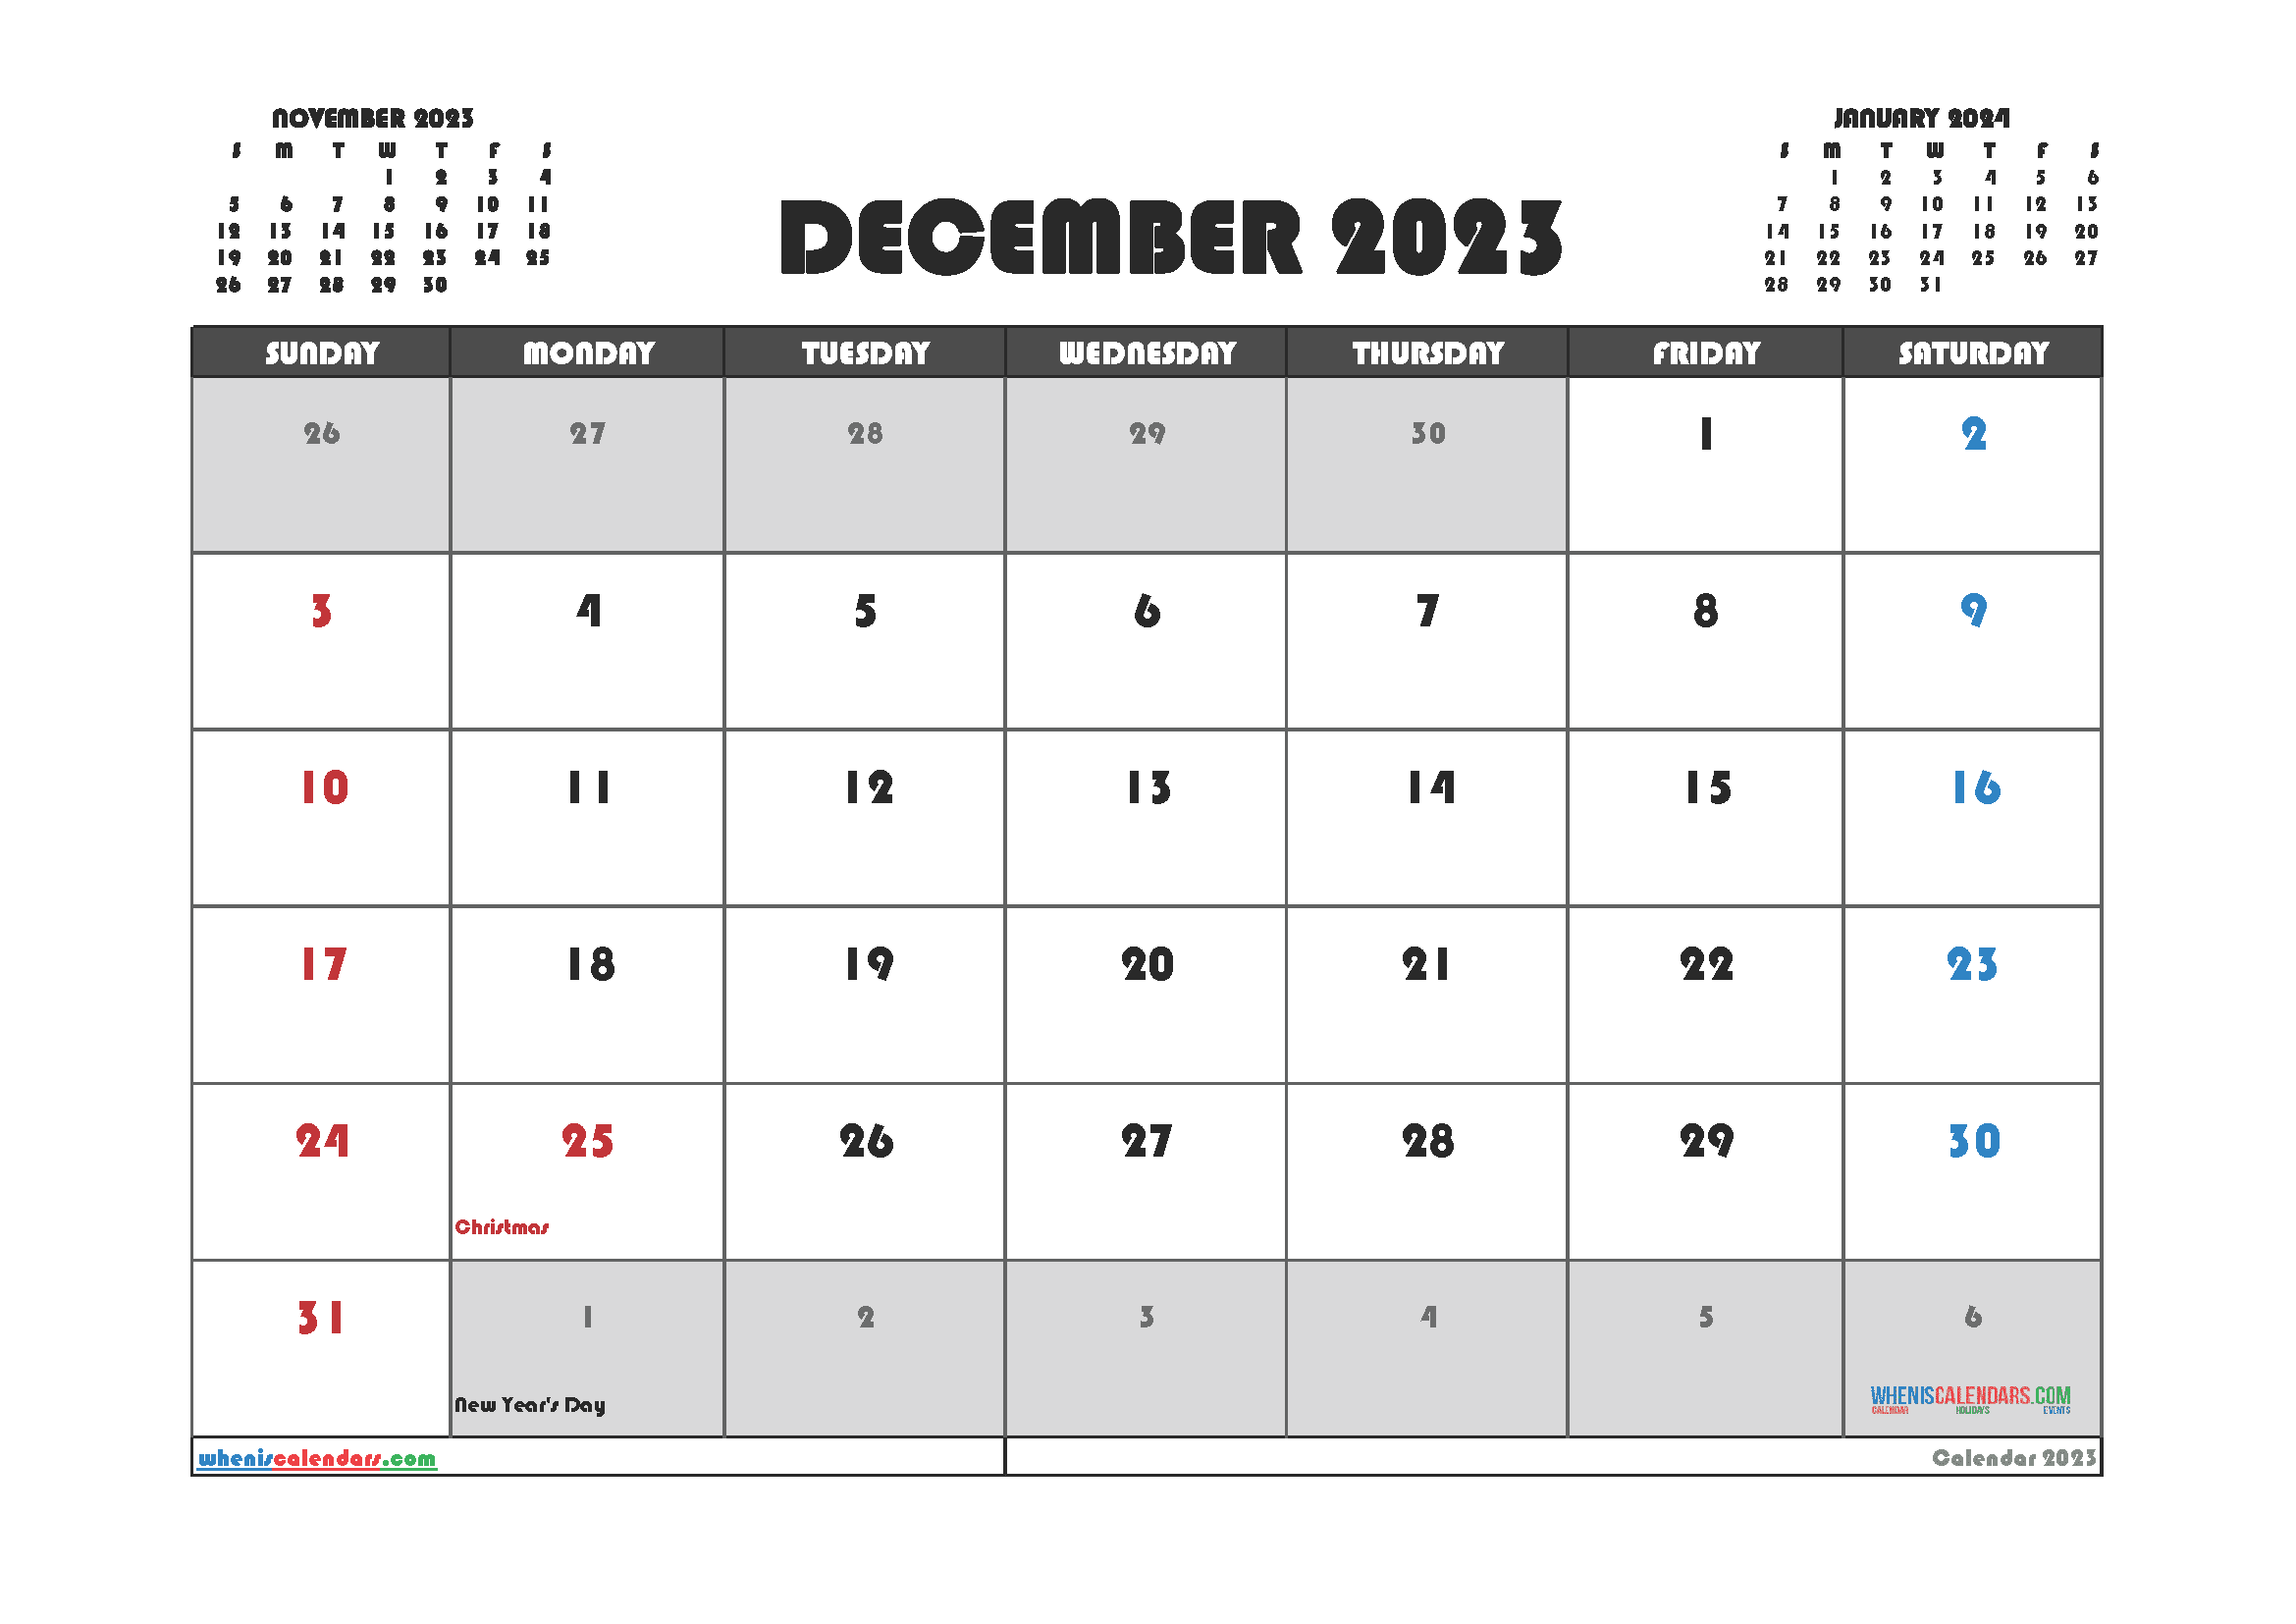 Download December 2023 schedule template